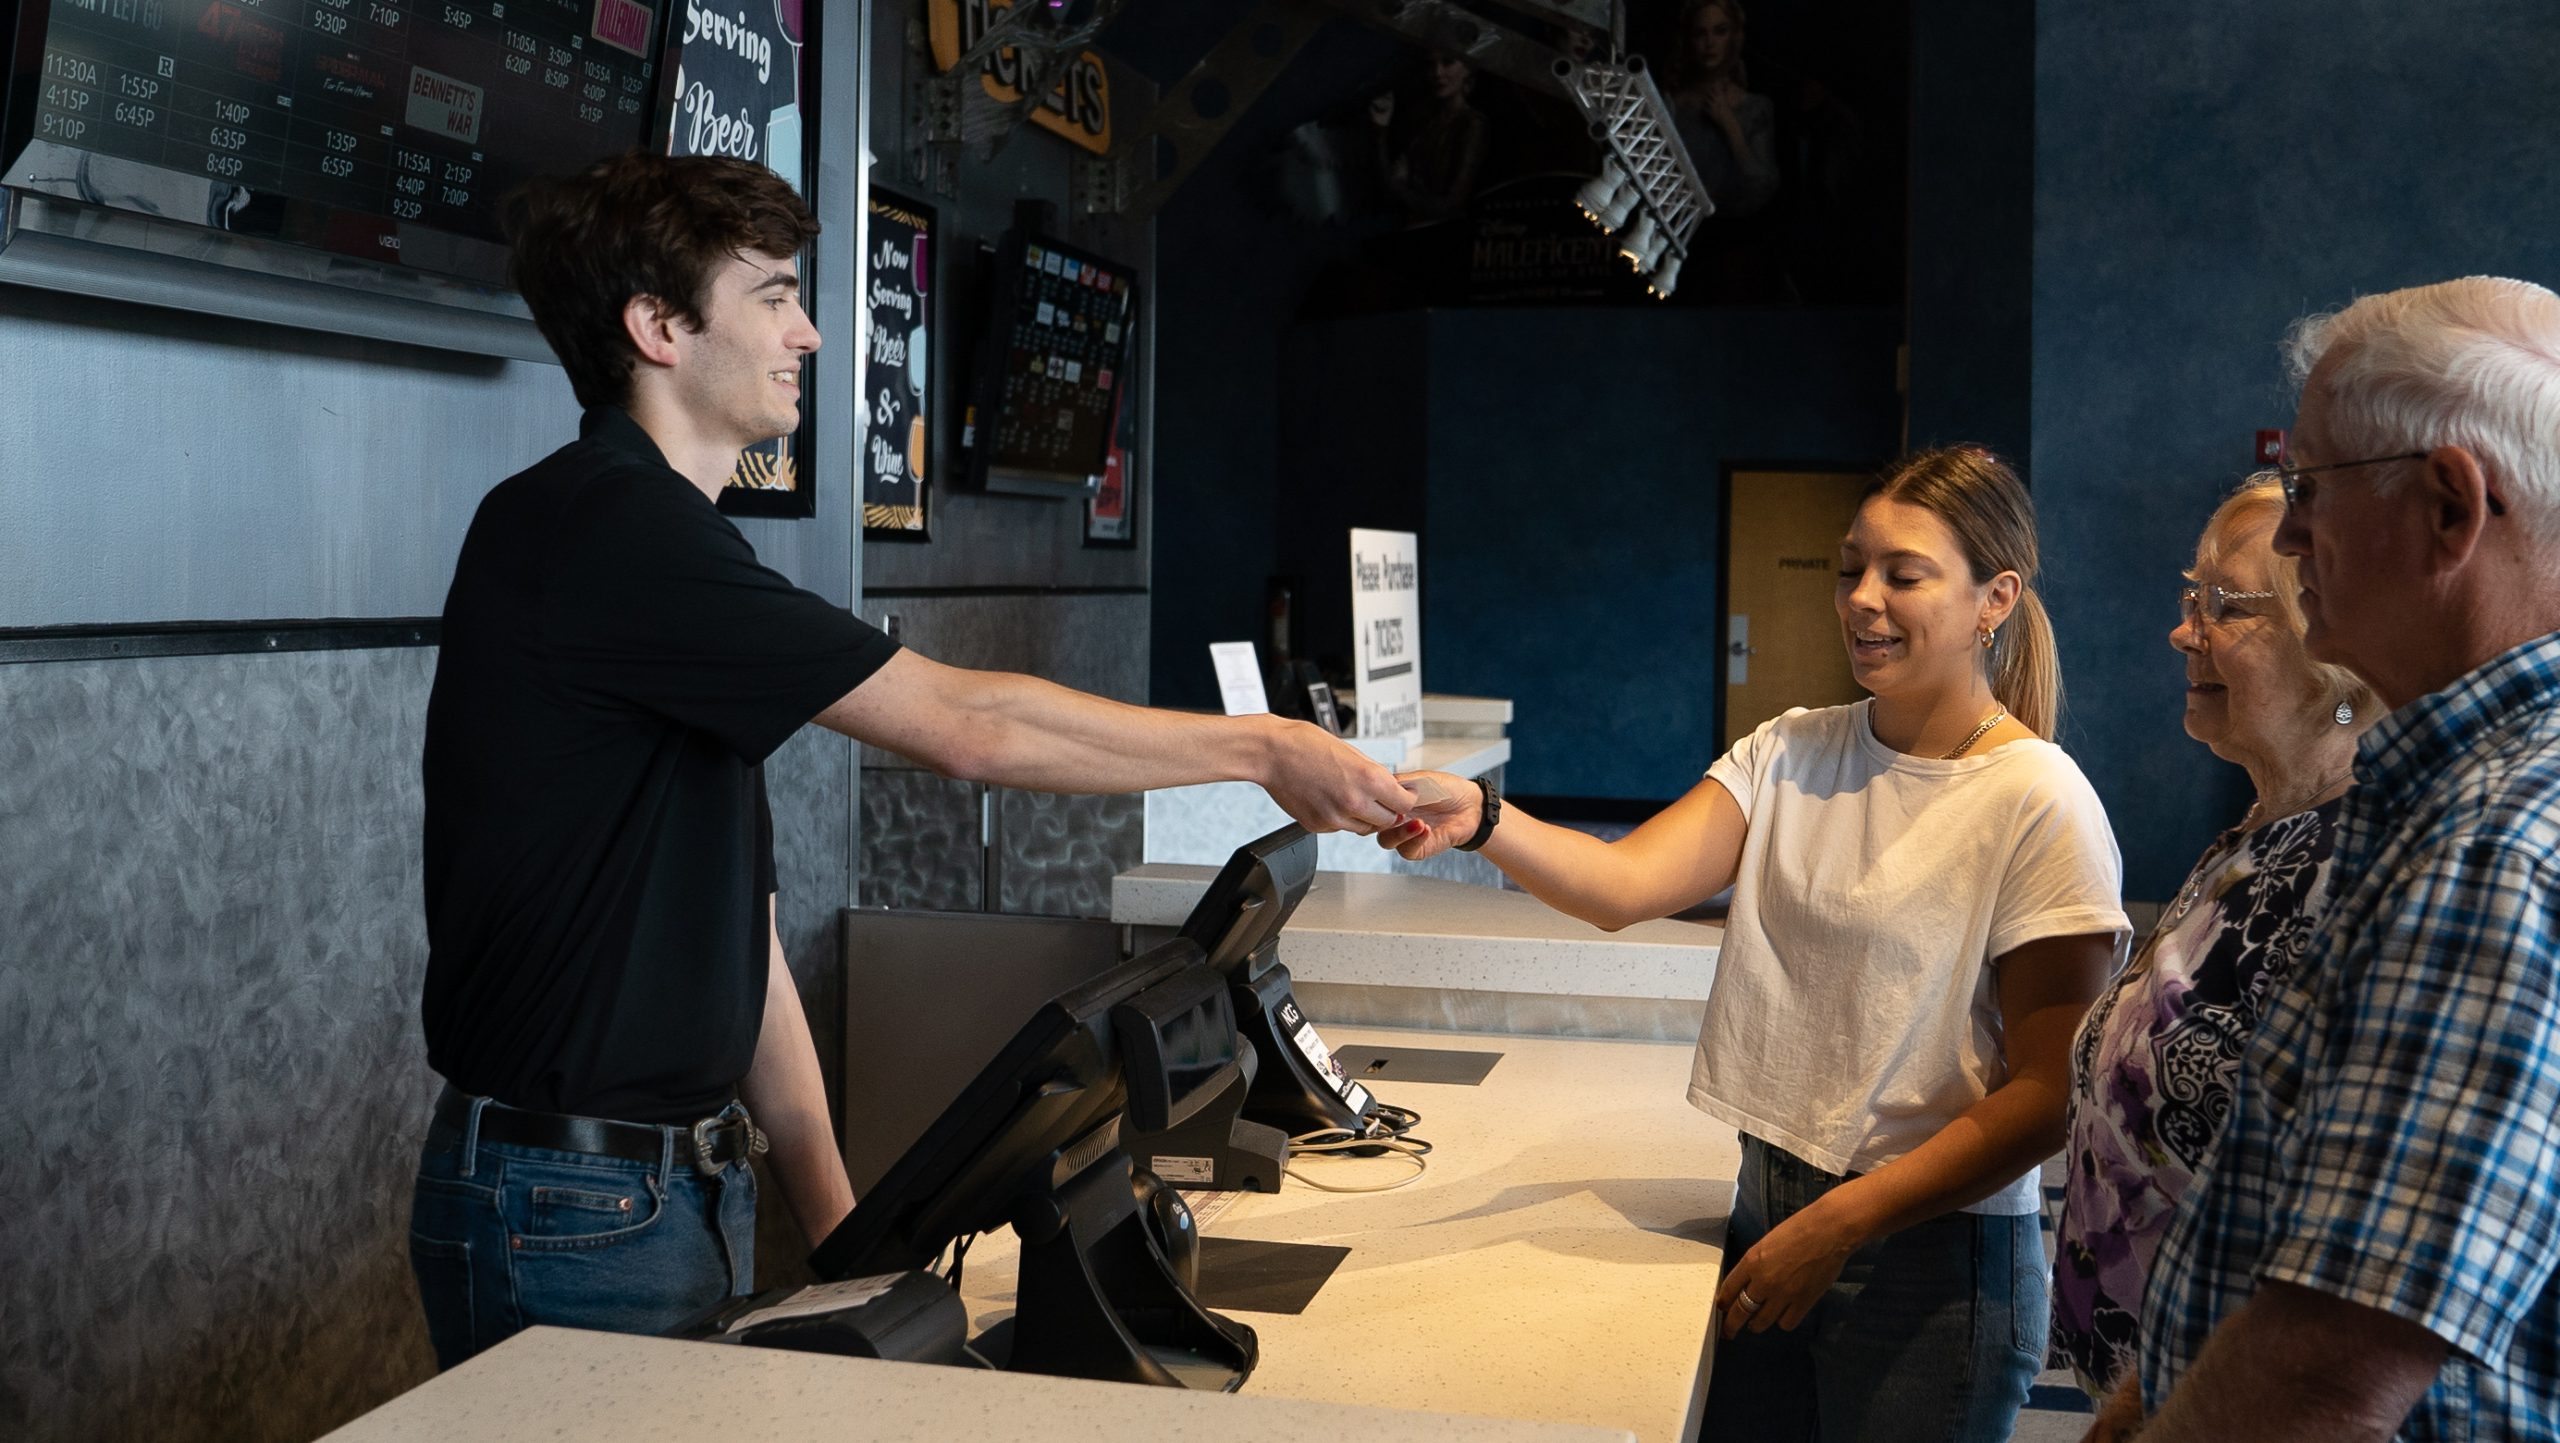 employee behind counter handing customer a receipt